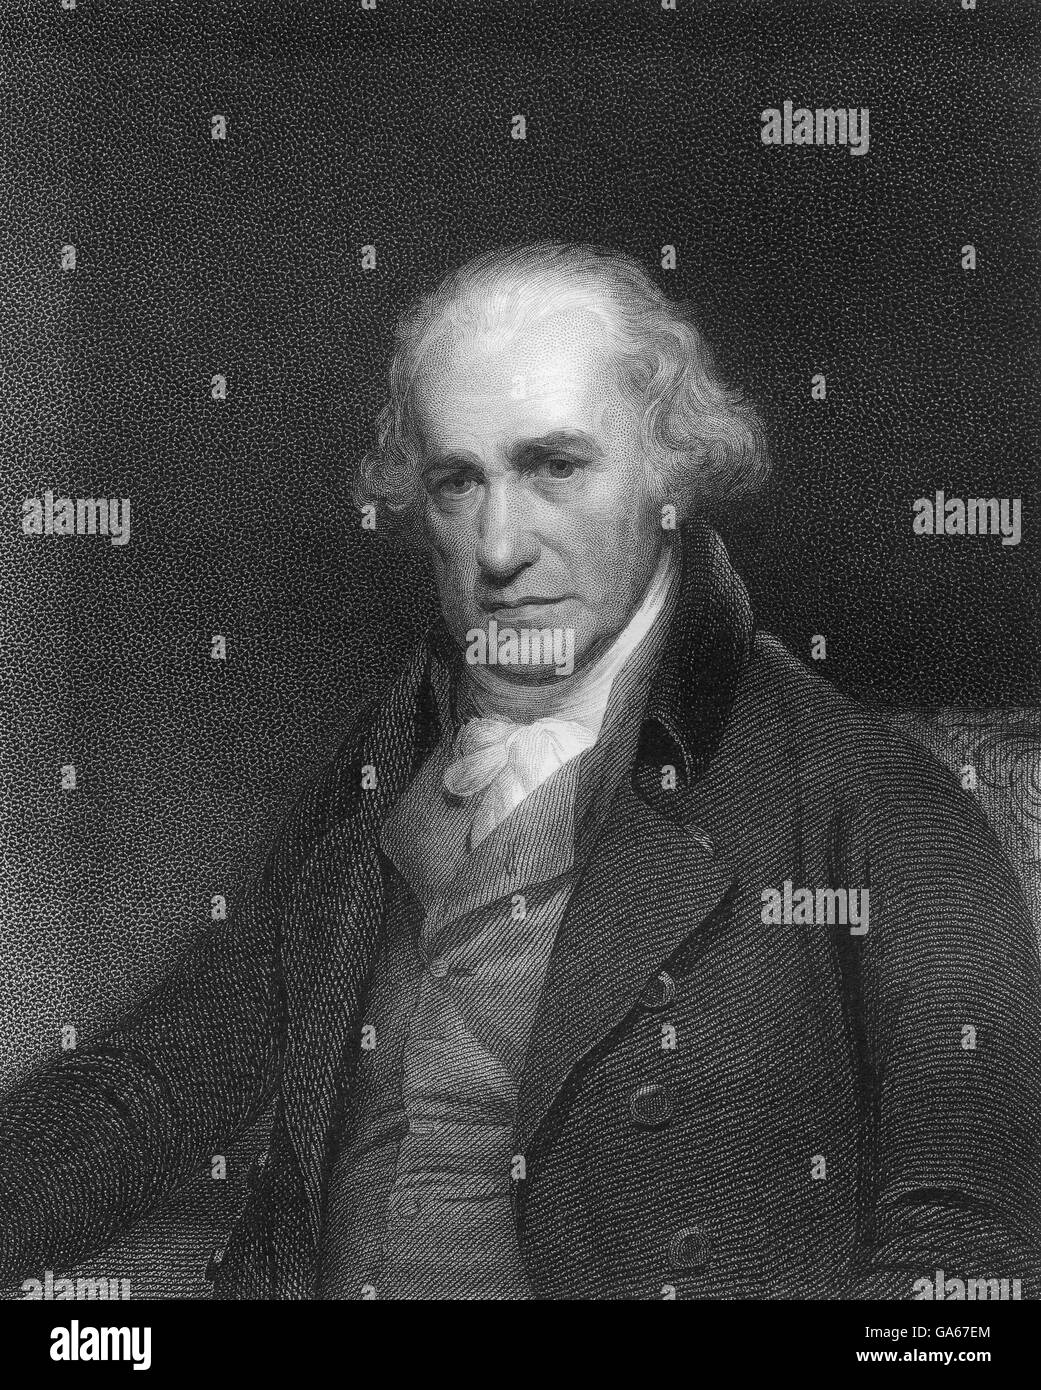 James Watt, 1736 - 1819, l'inventeur écossais de la machine à vapeur Banque D'Images